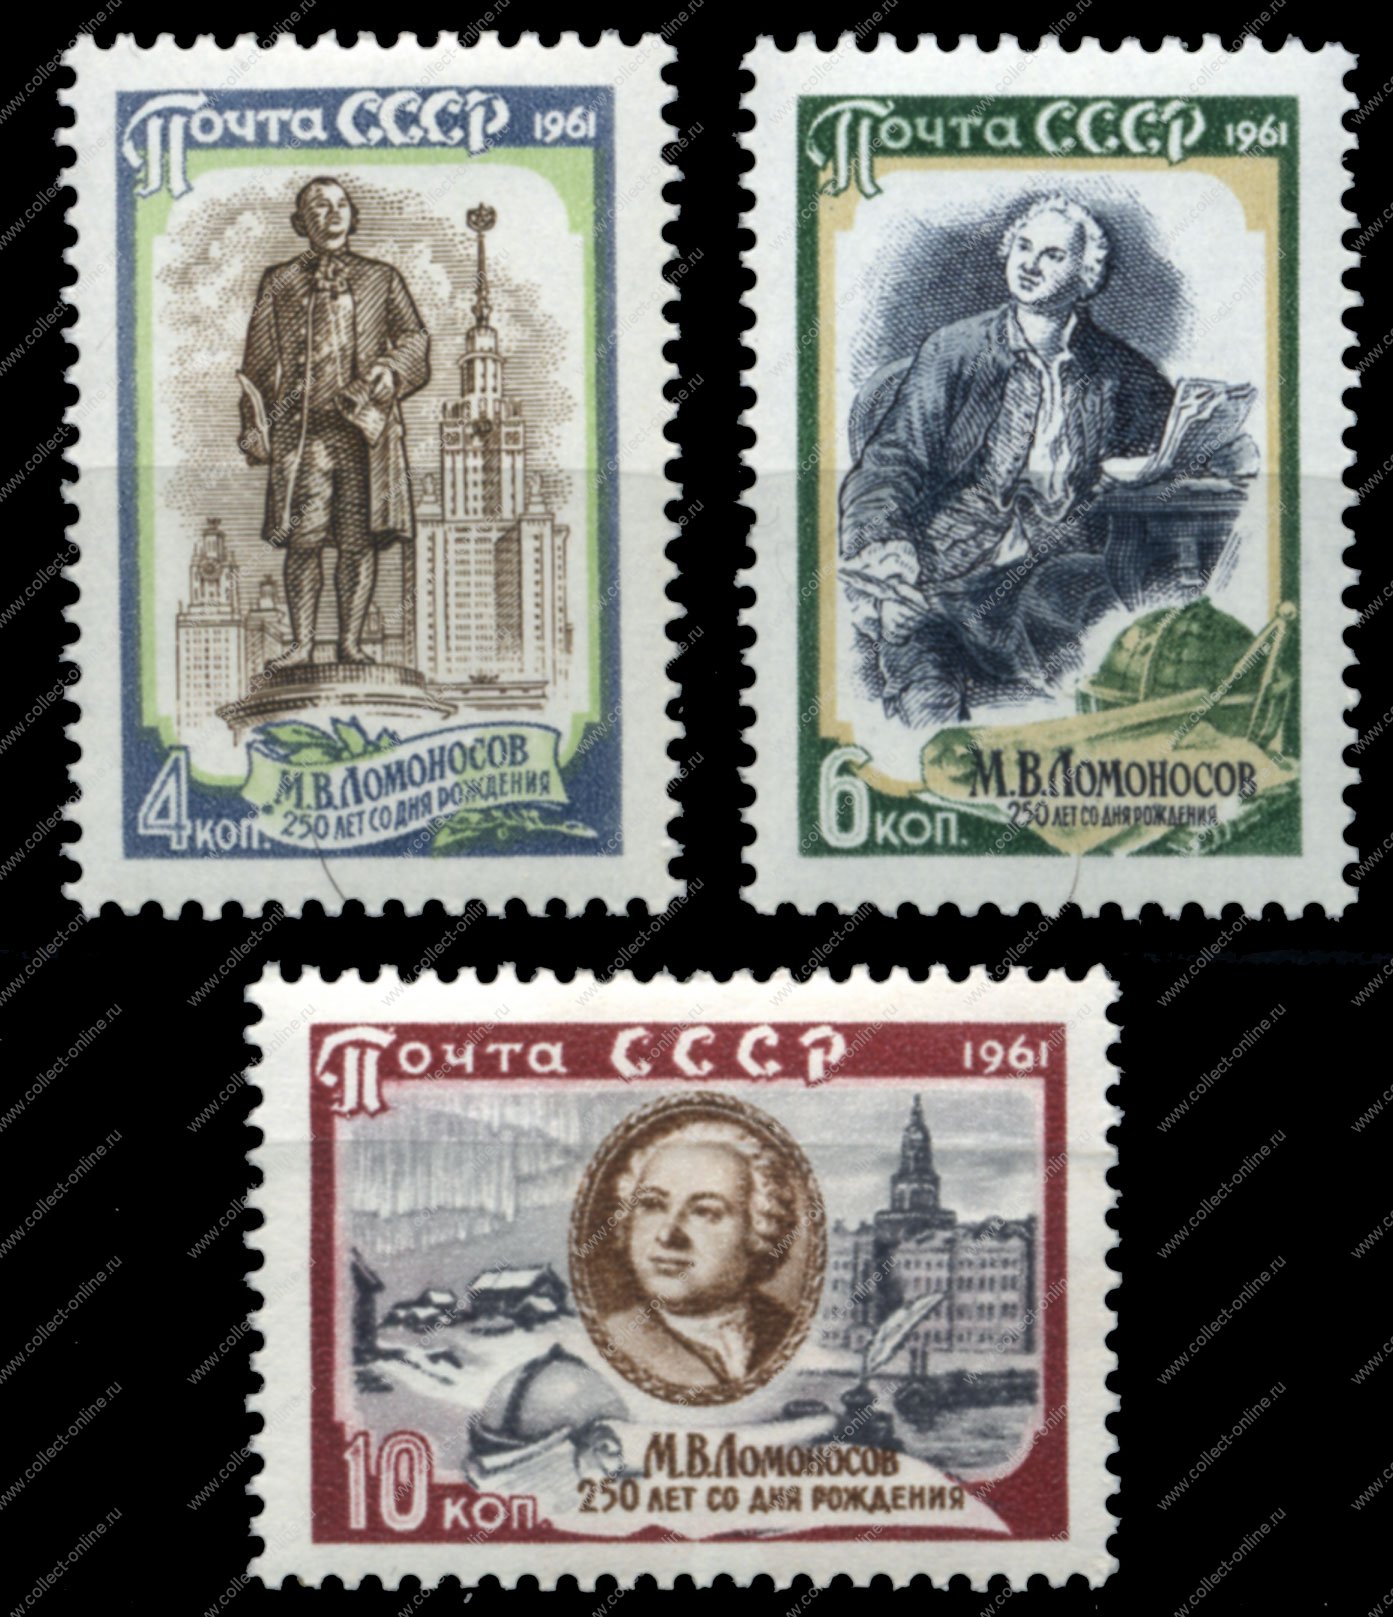 Название марка первого. Выпущены первые марки Советской России.